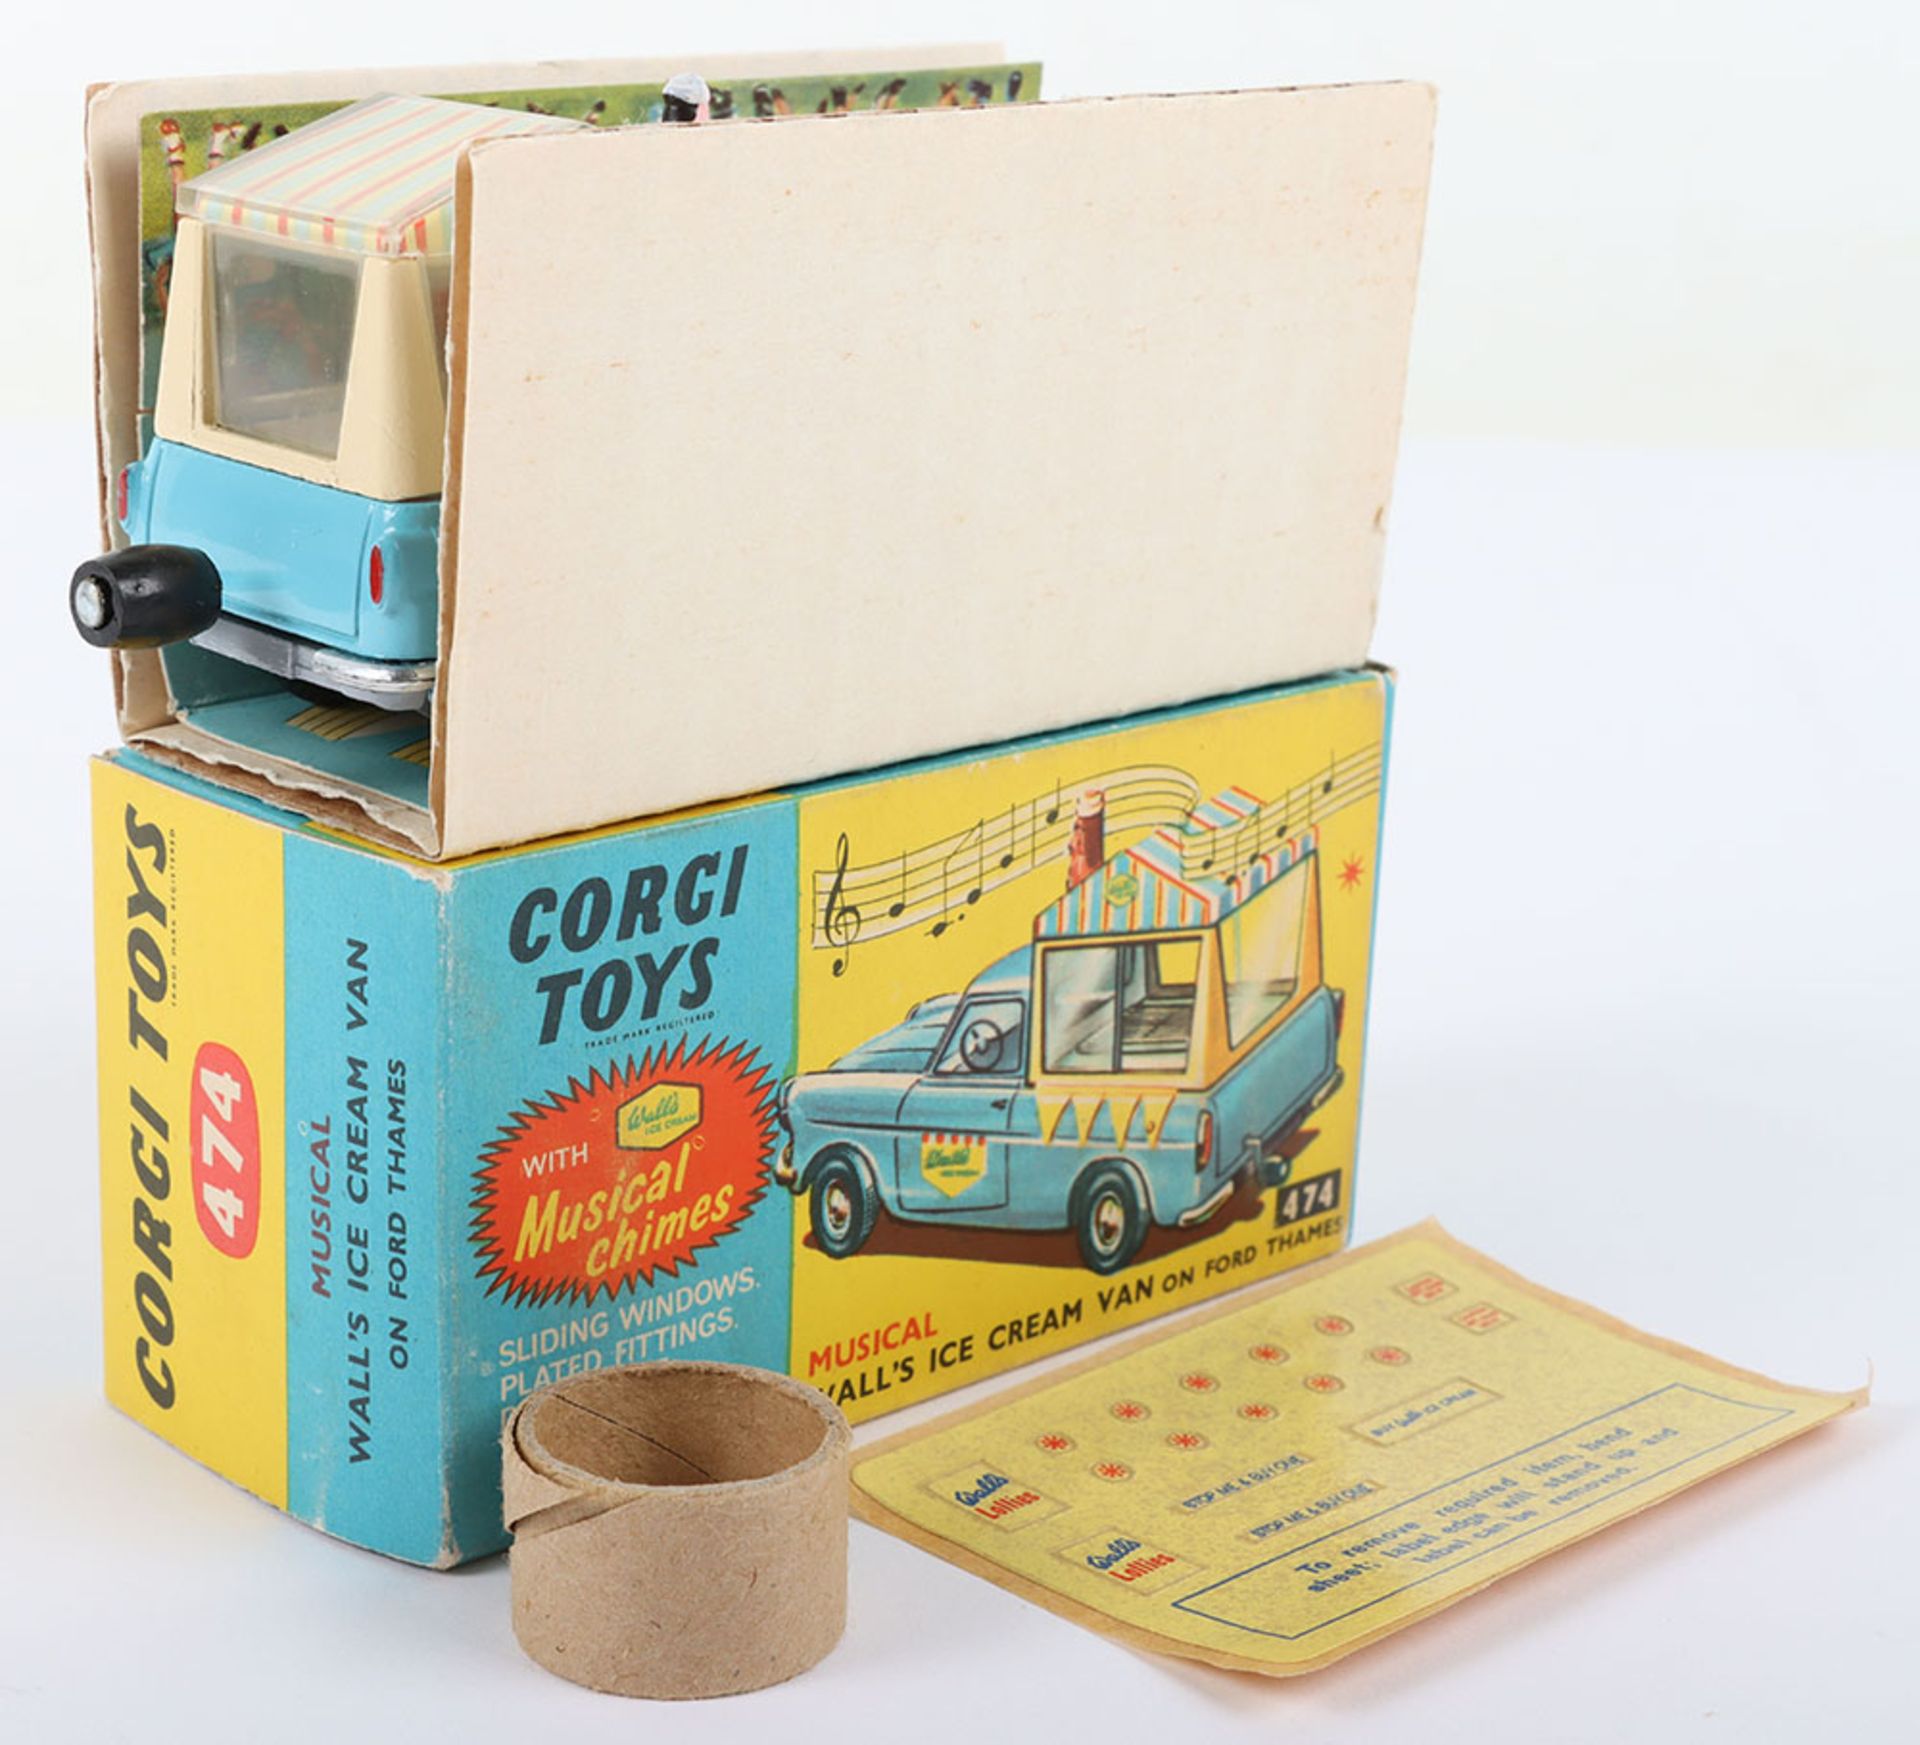 Corgi Toys Corgi Toys 474 Musical Walls Ice Cream Van on Ford Thames - Bild 7 aus 7